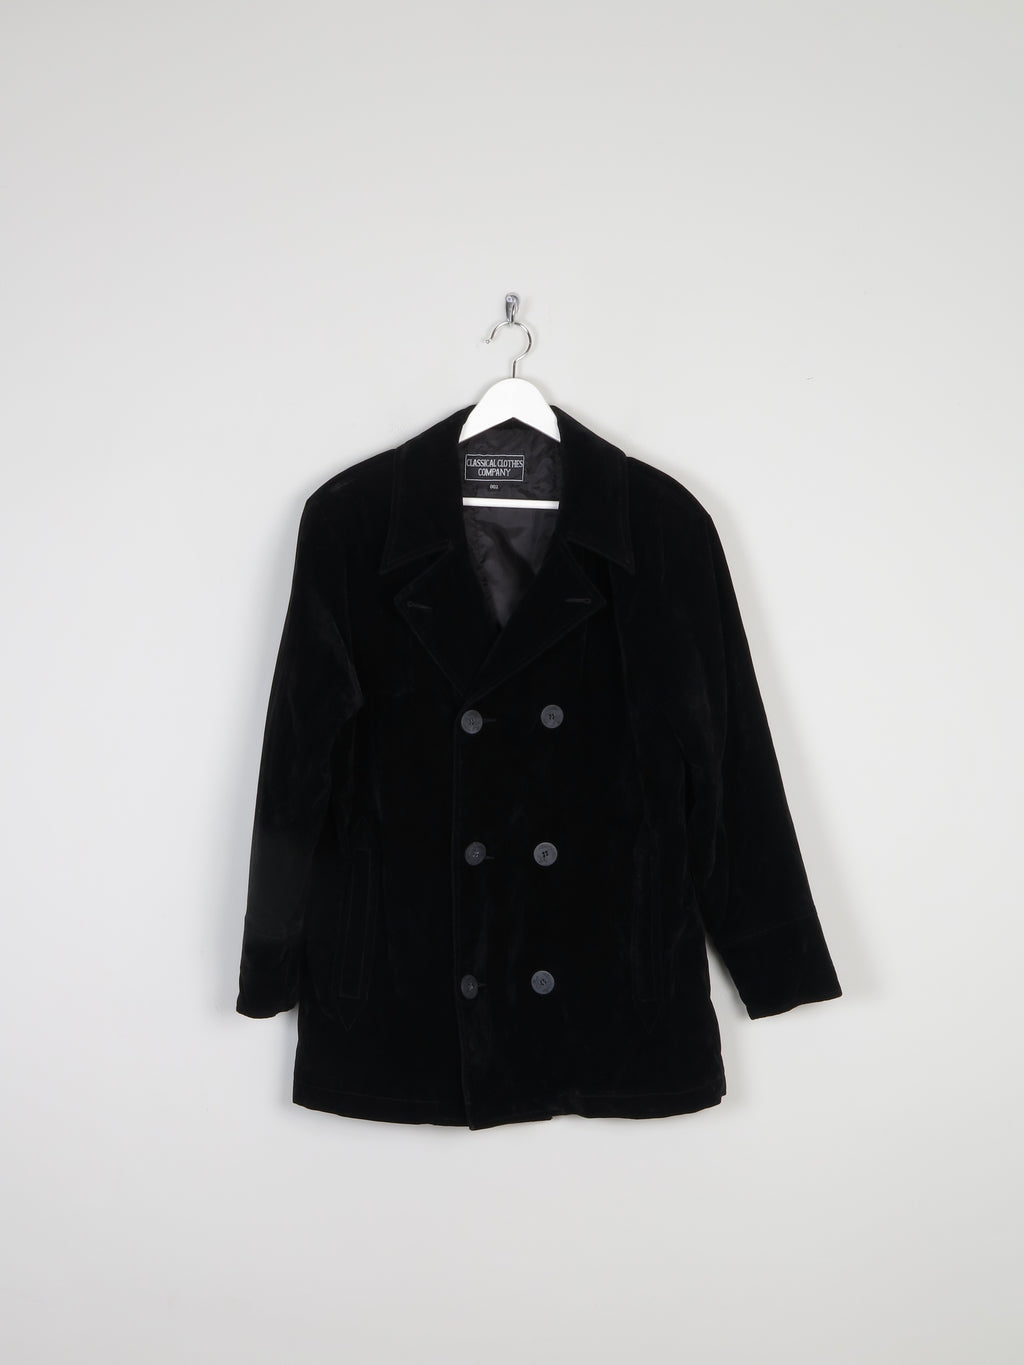 Mens Black Velvet Jacket/Pea Coat M